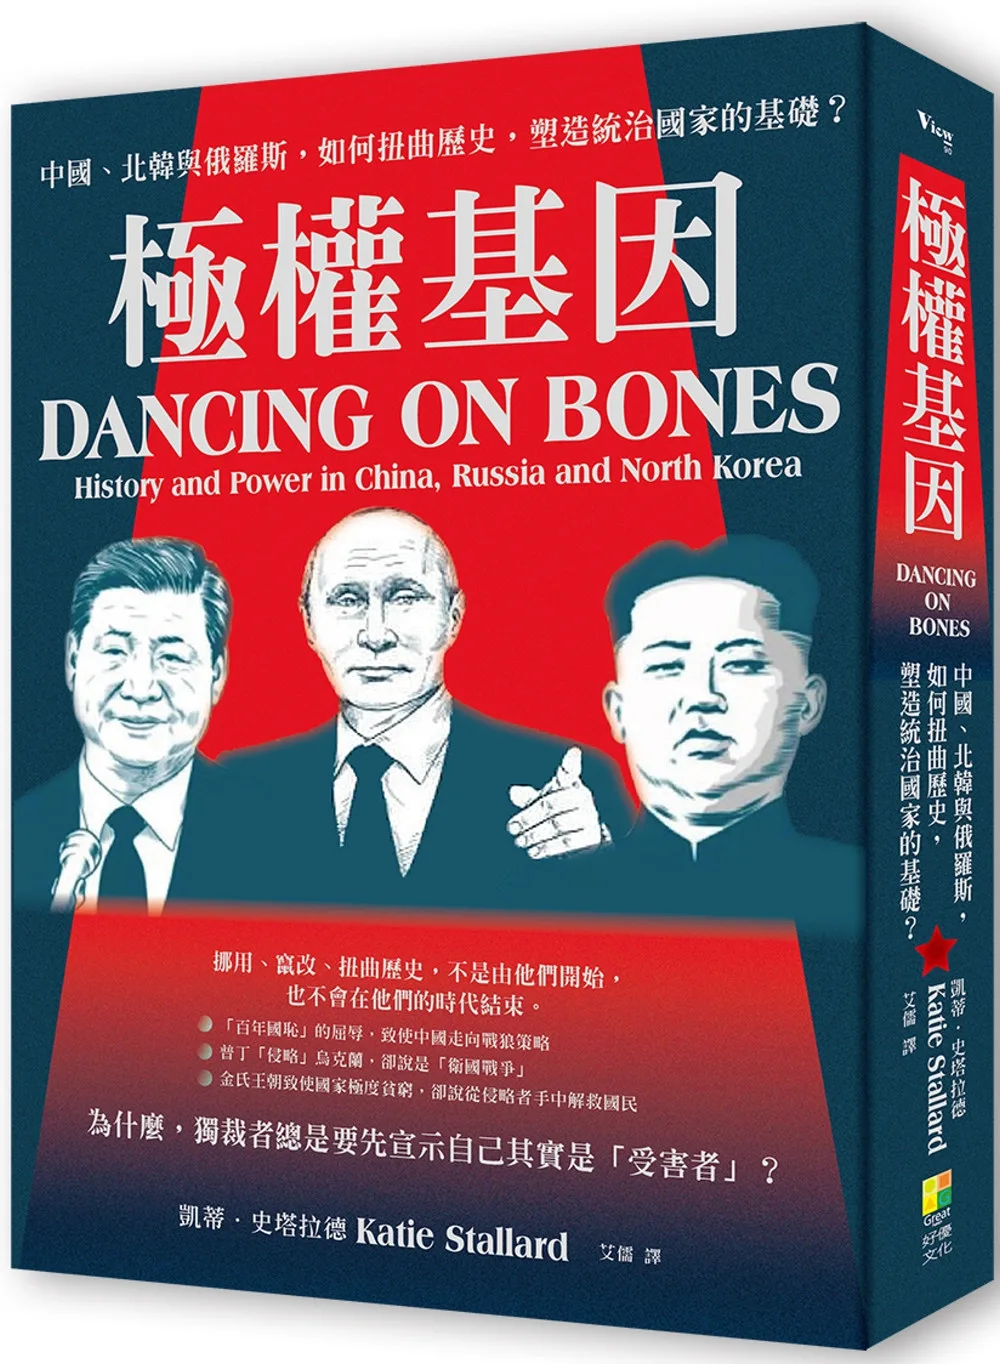 極權基因：中國、北韓與俄羅斯，如何扭曲歷史，塑造統治國家的基礎？